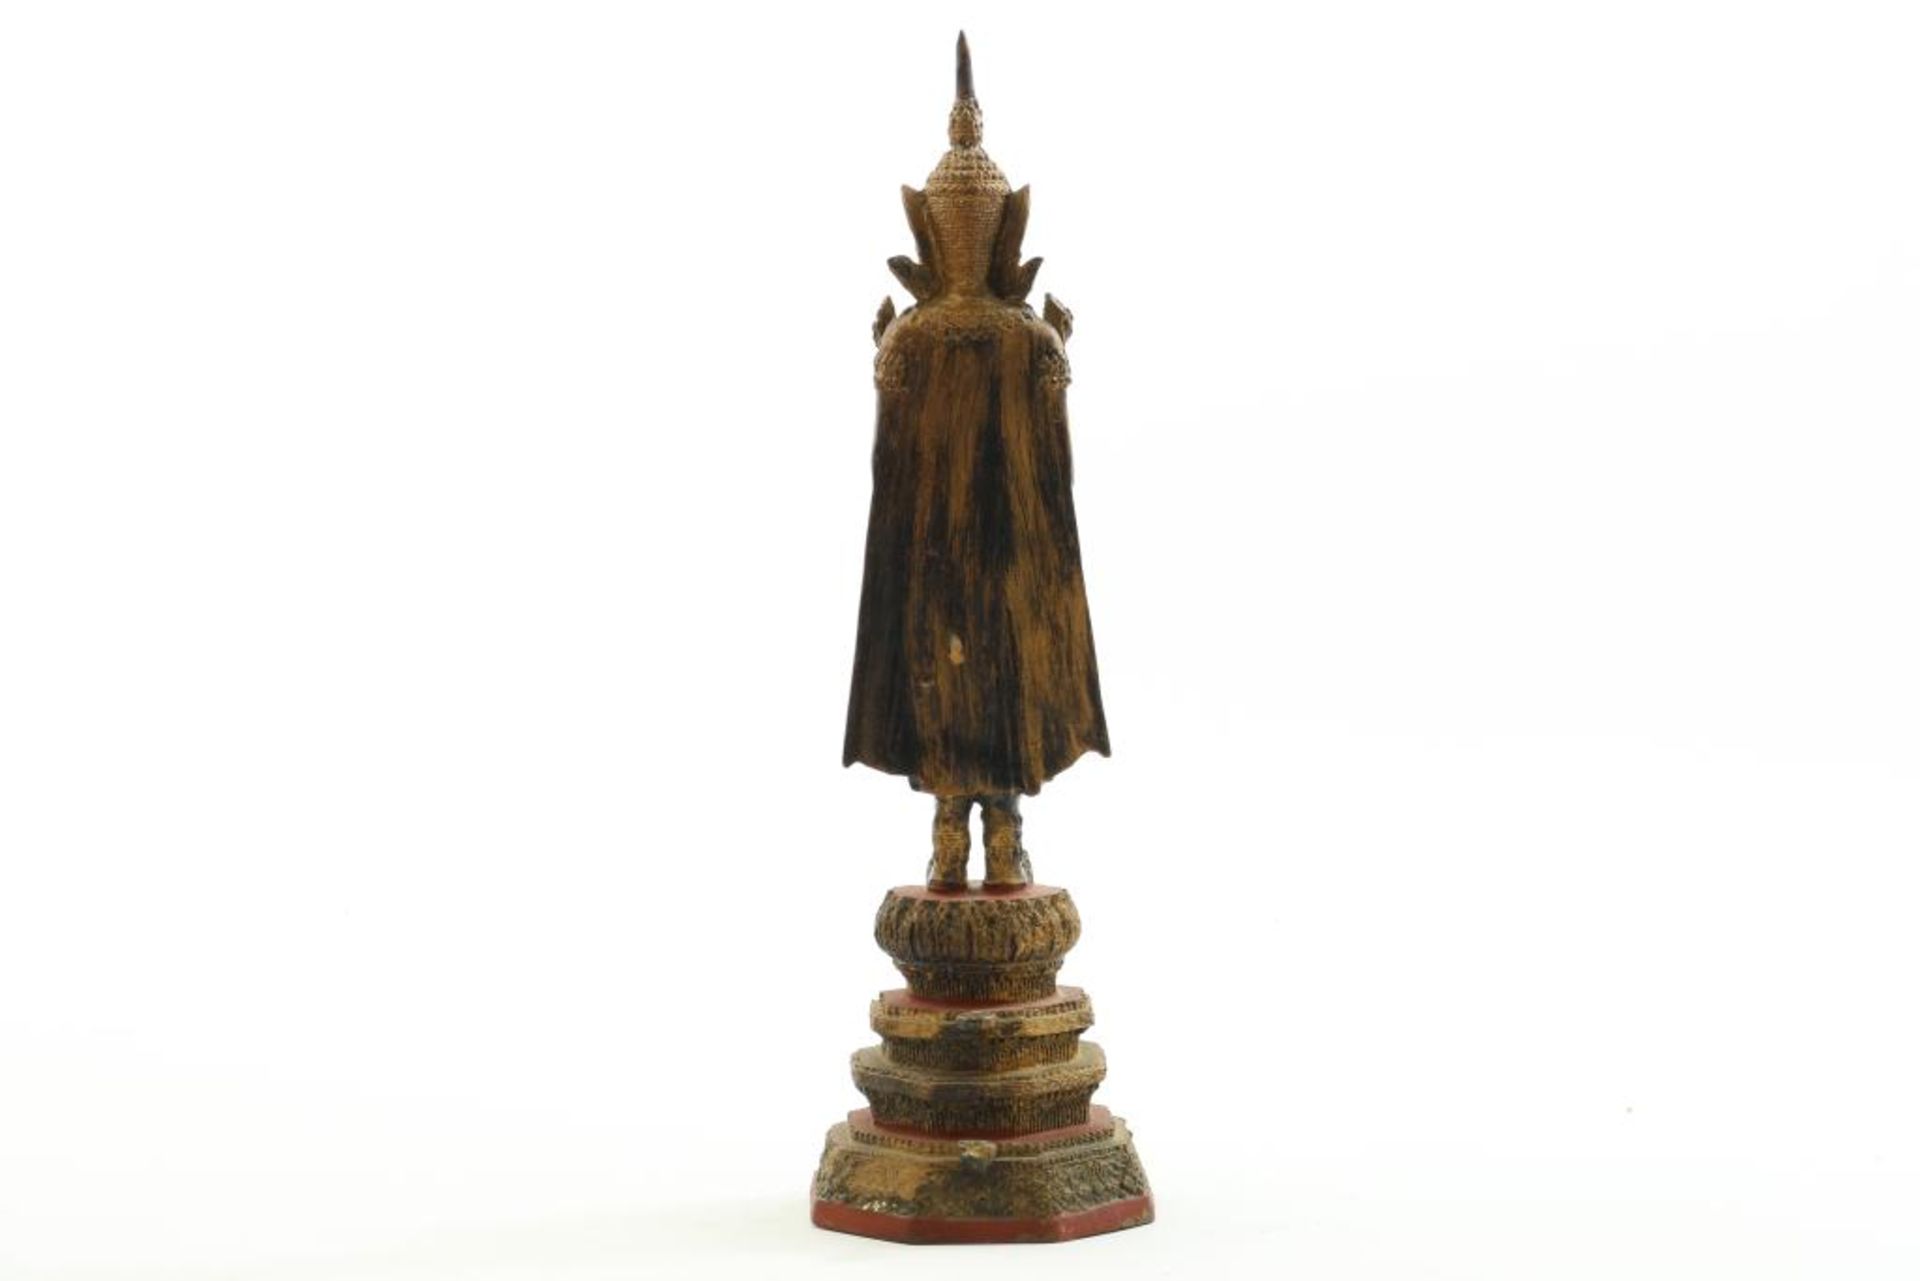 Bronzen staande Boeddha - Bild 2 aus 2